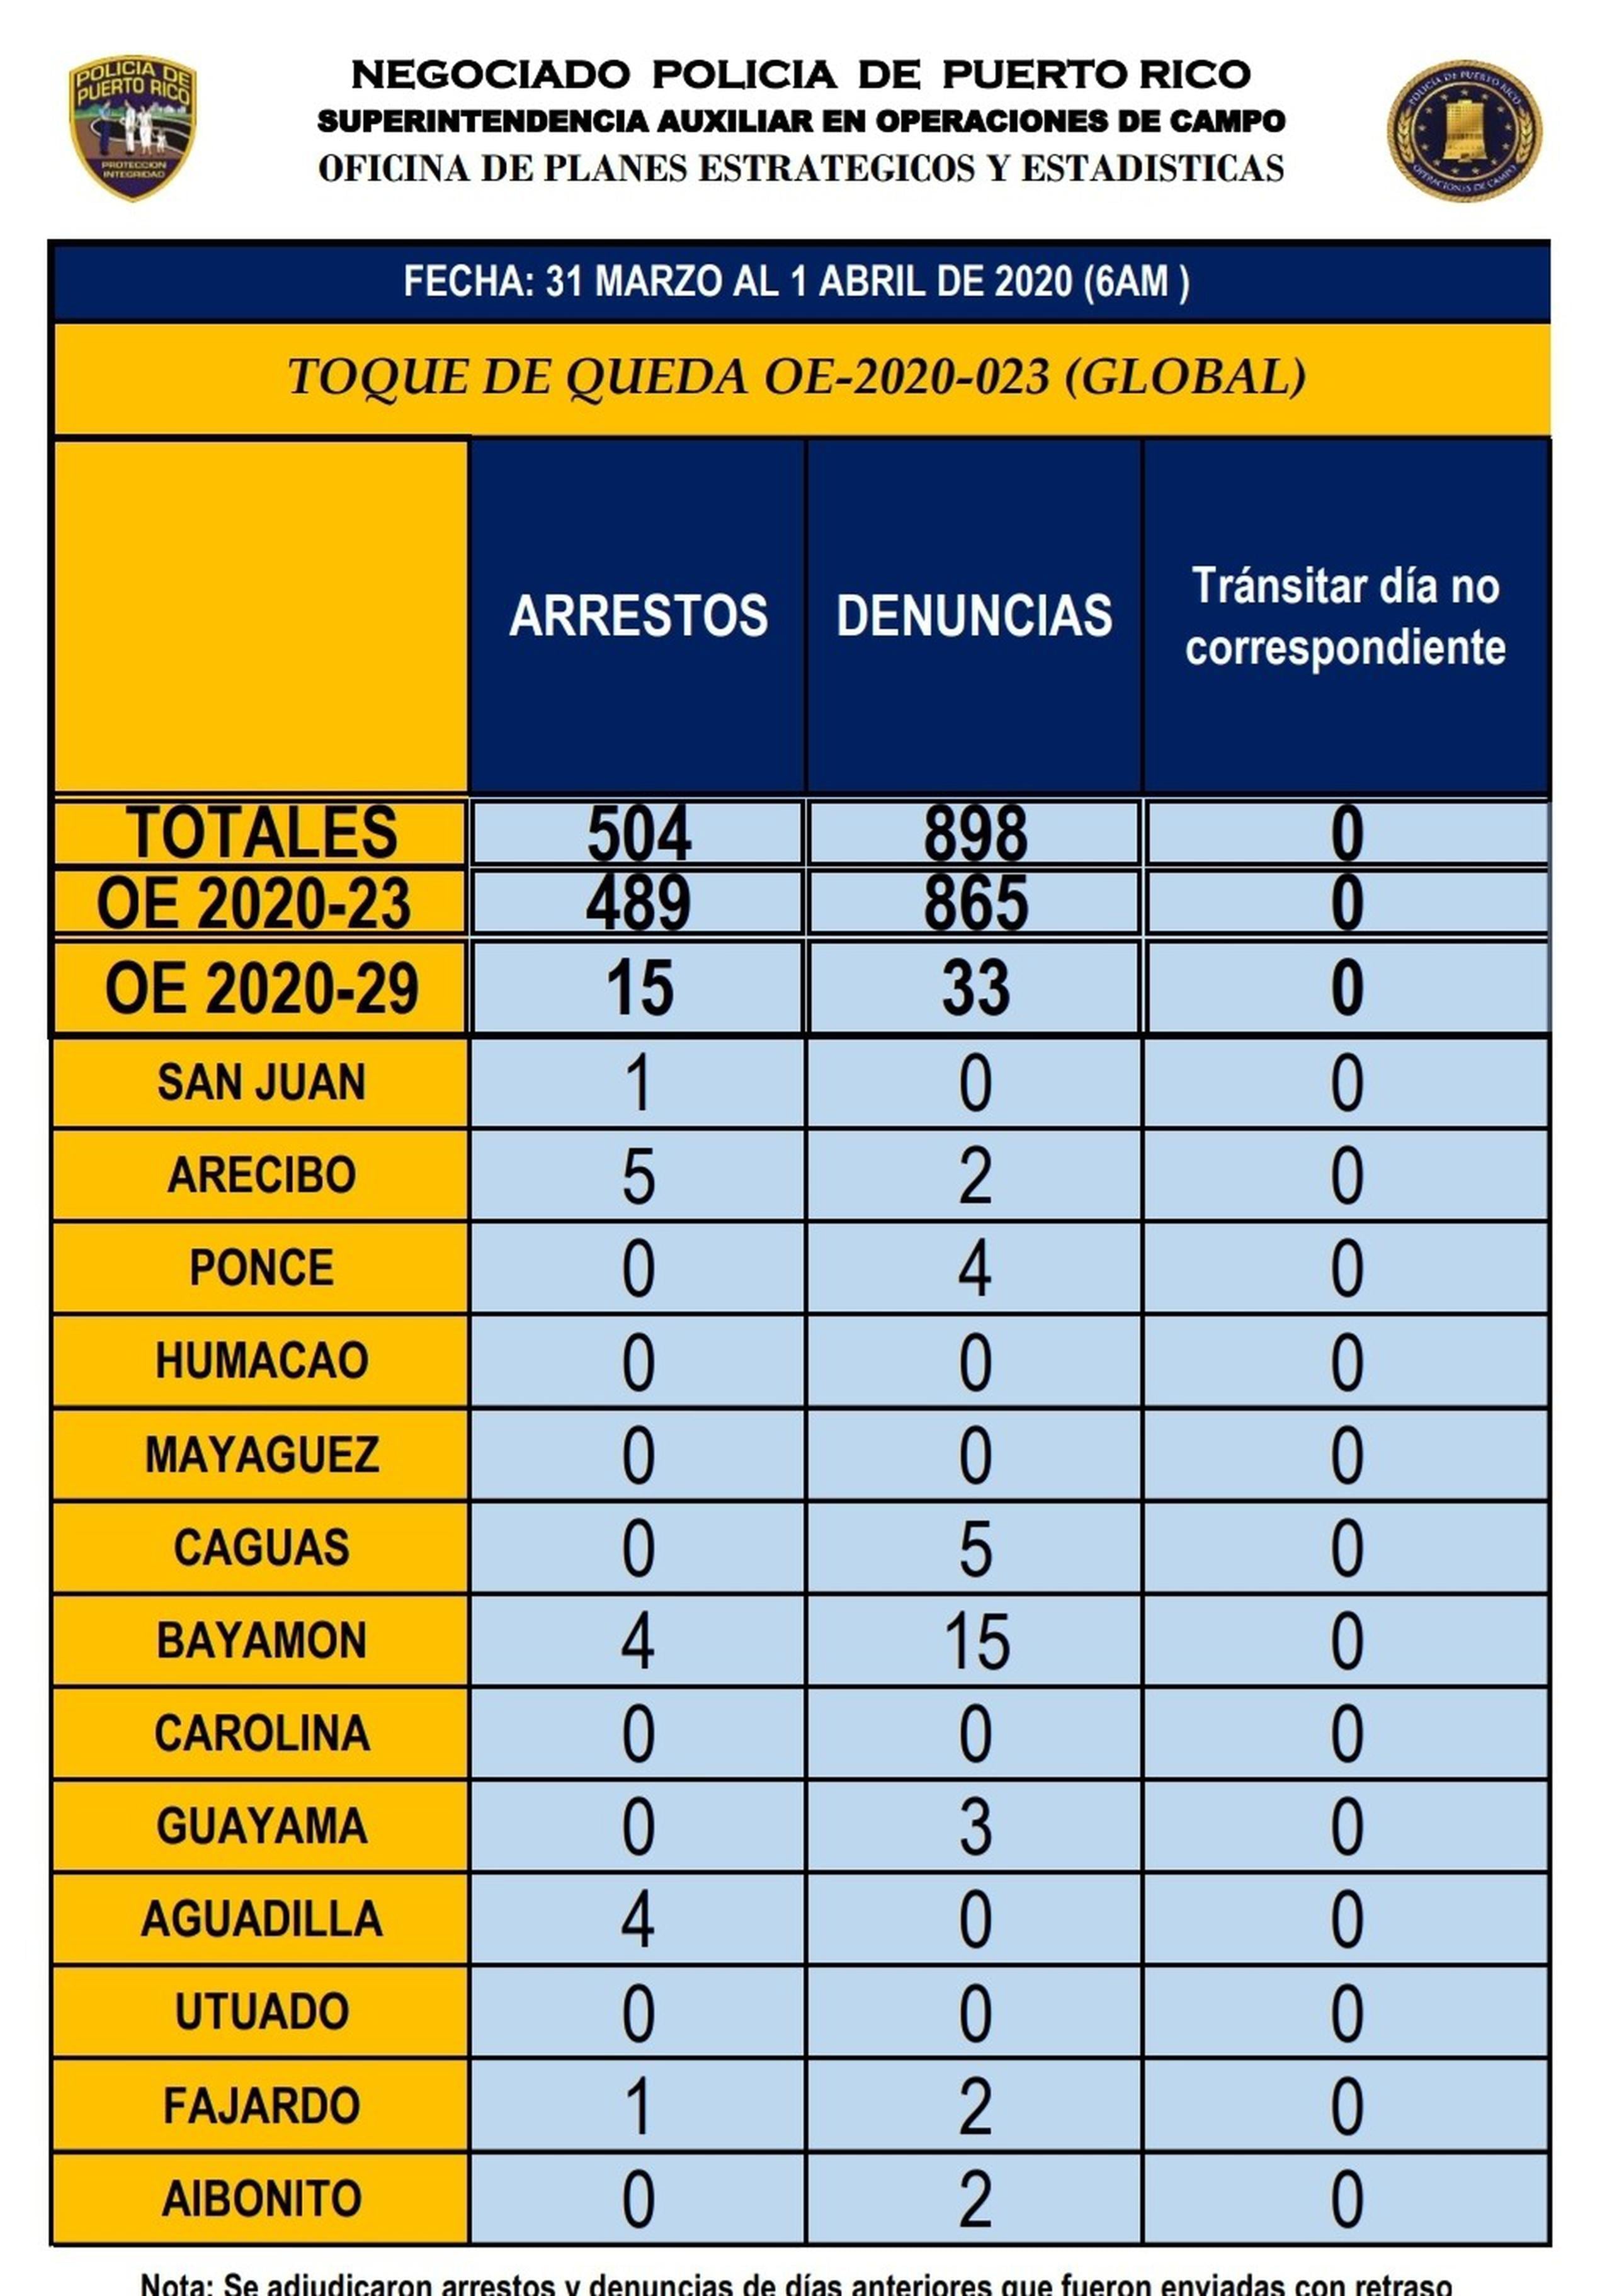 Desde el 15 de marzo el Negociado de la Policía ha arrestado a 504 personas y denunciado a 898 por violación a las disposiciones del toque de queda.